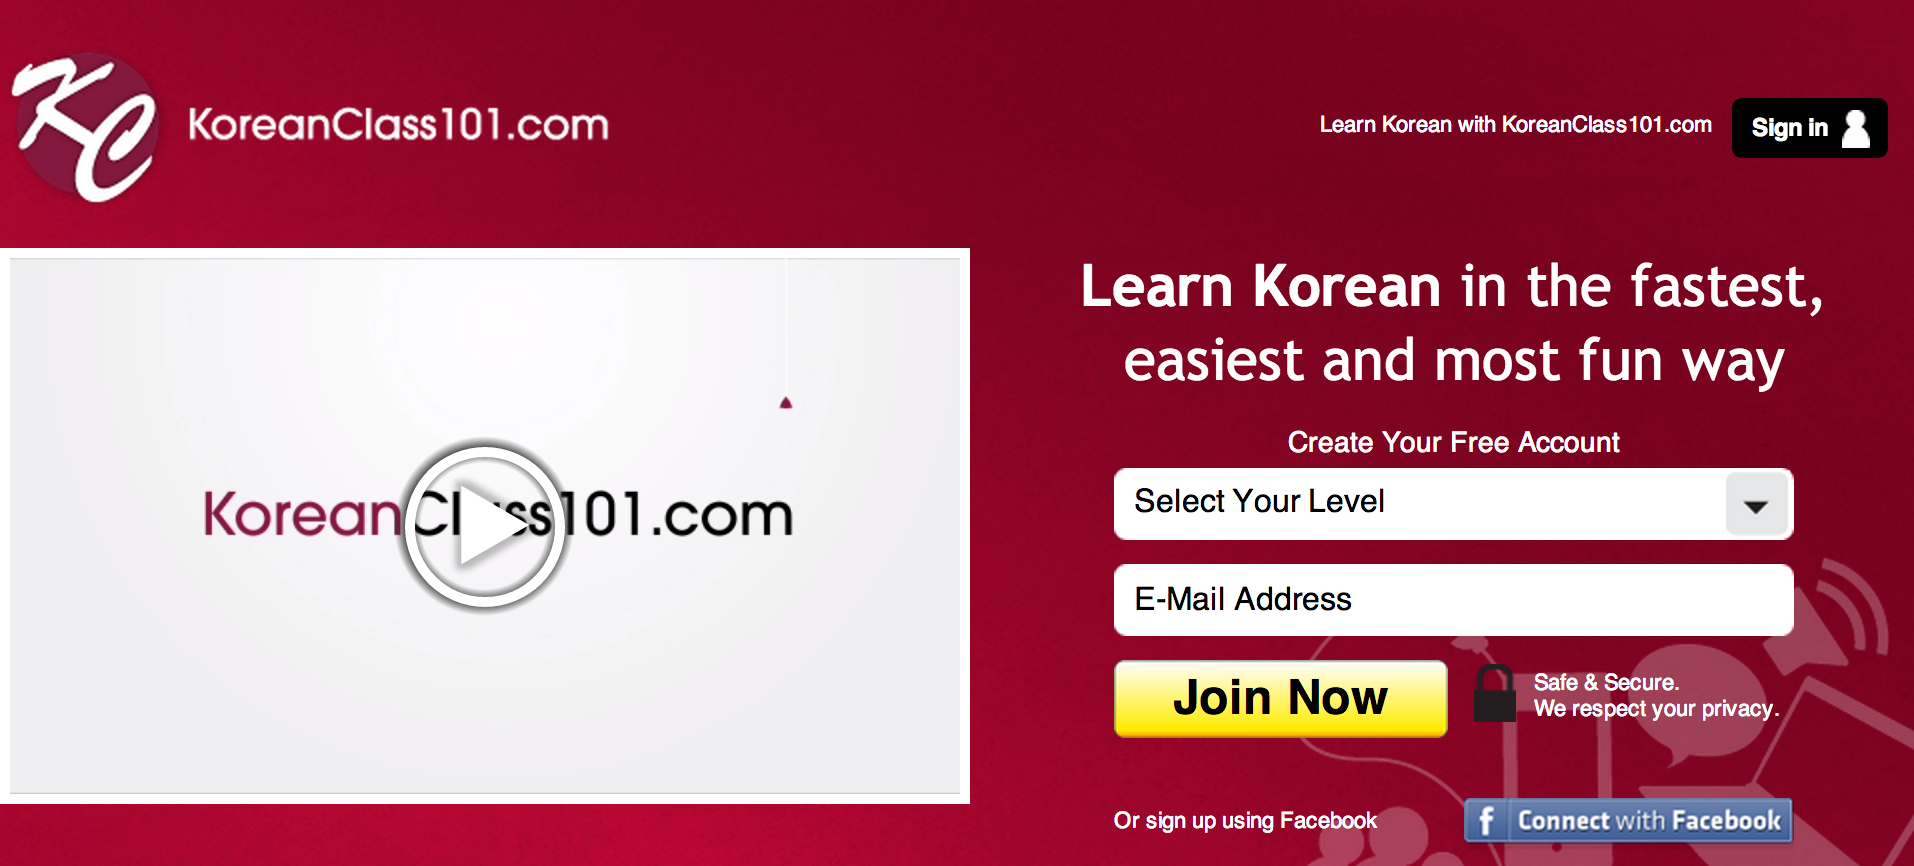 KoreanClass101.com